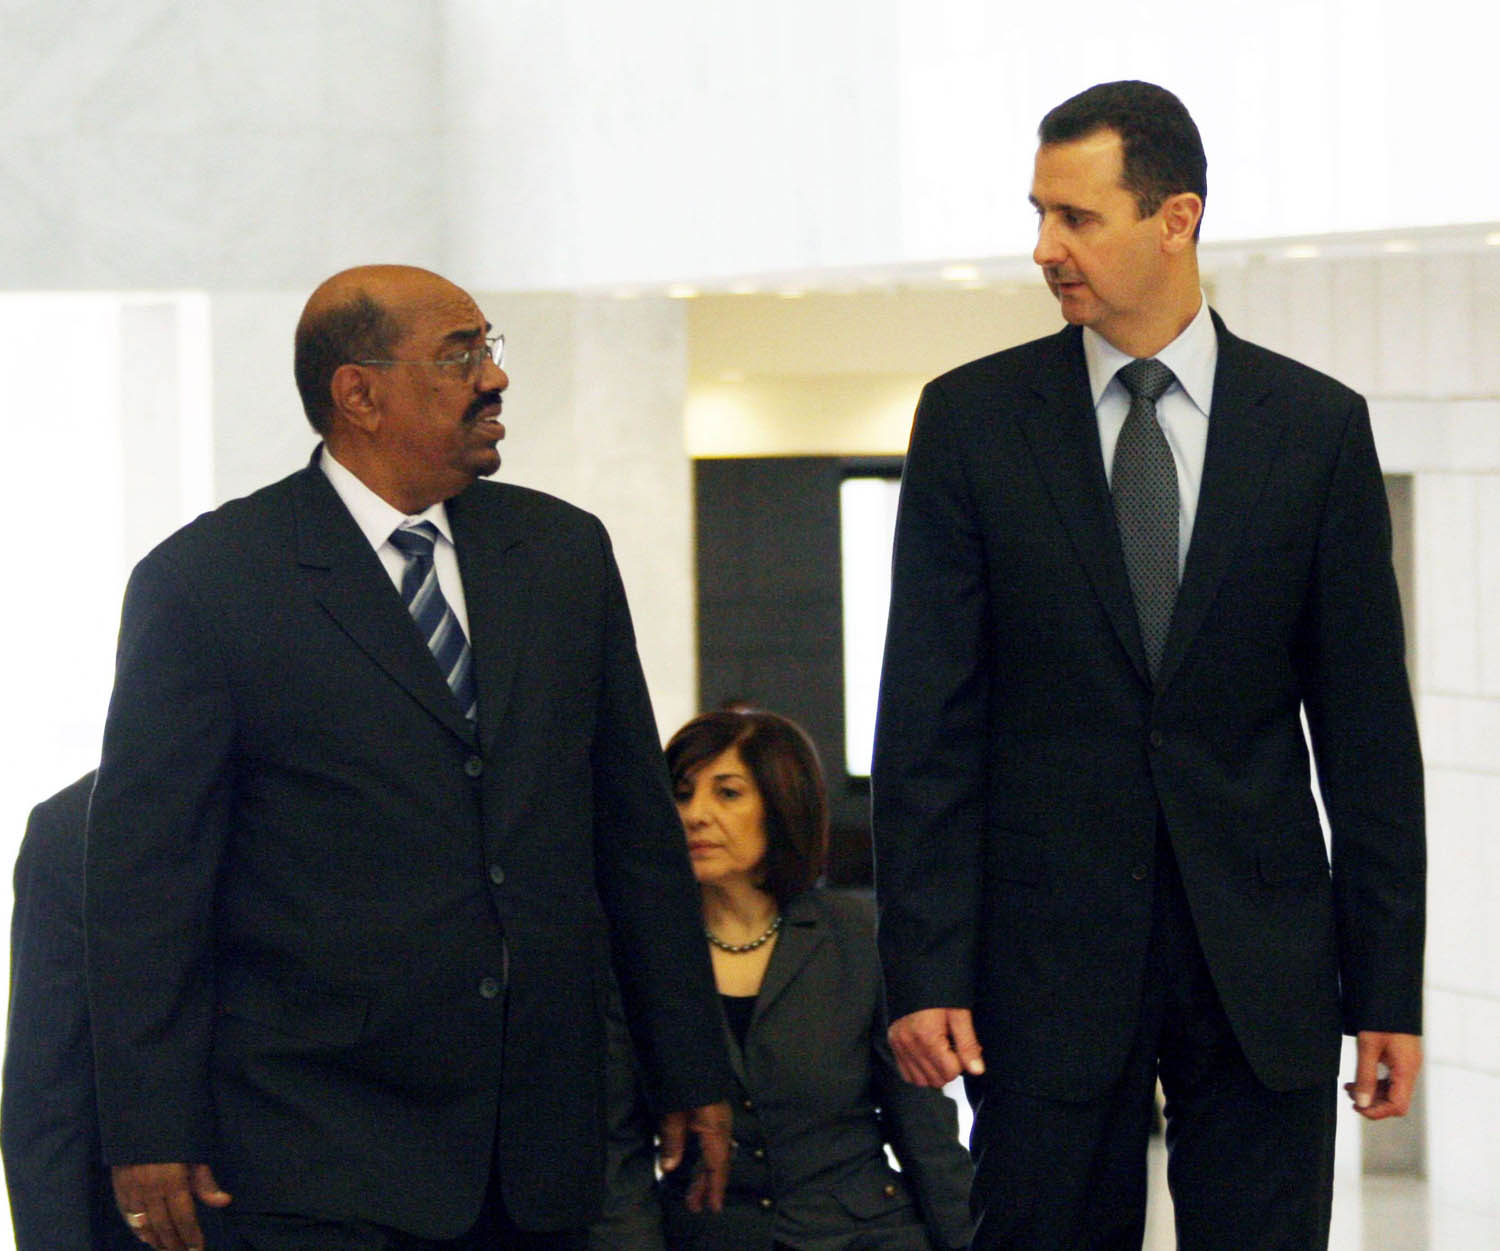 الرئيس السوري بشار الأسد يستقبل الرئيس السوداني المخلوع عمر البشير في دمشق